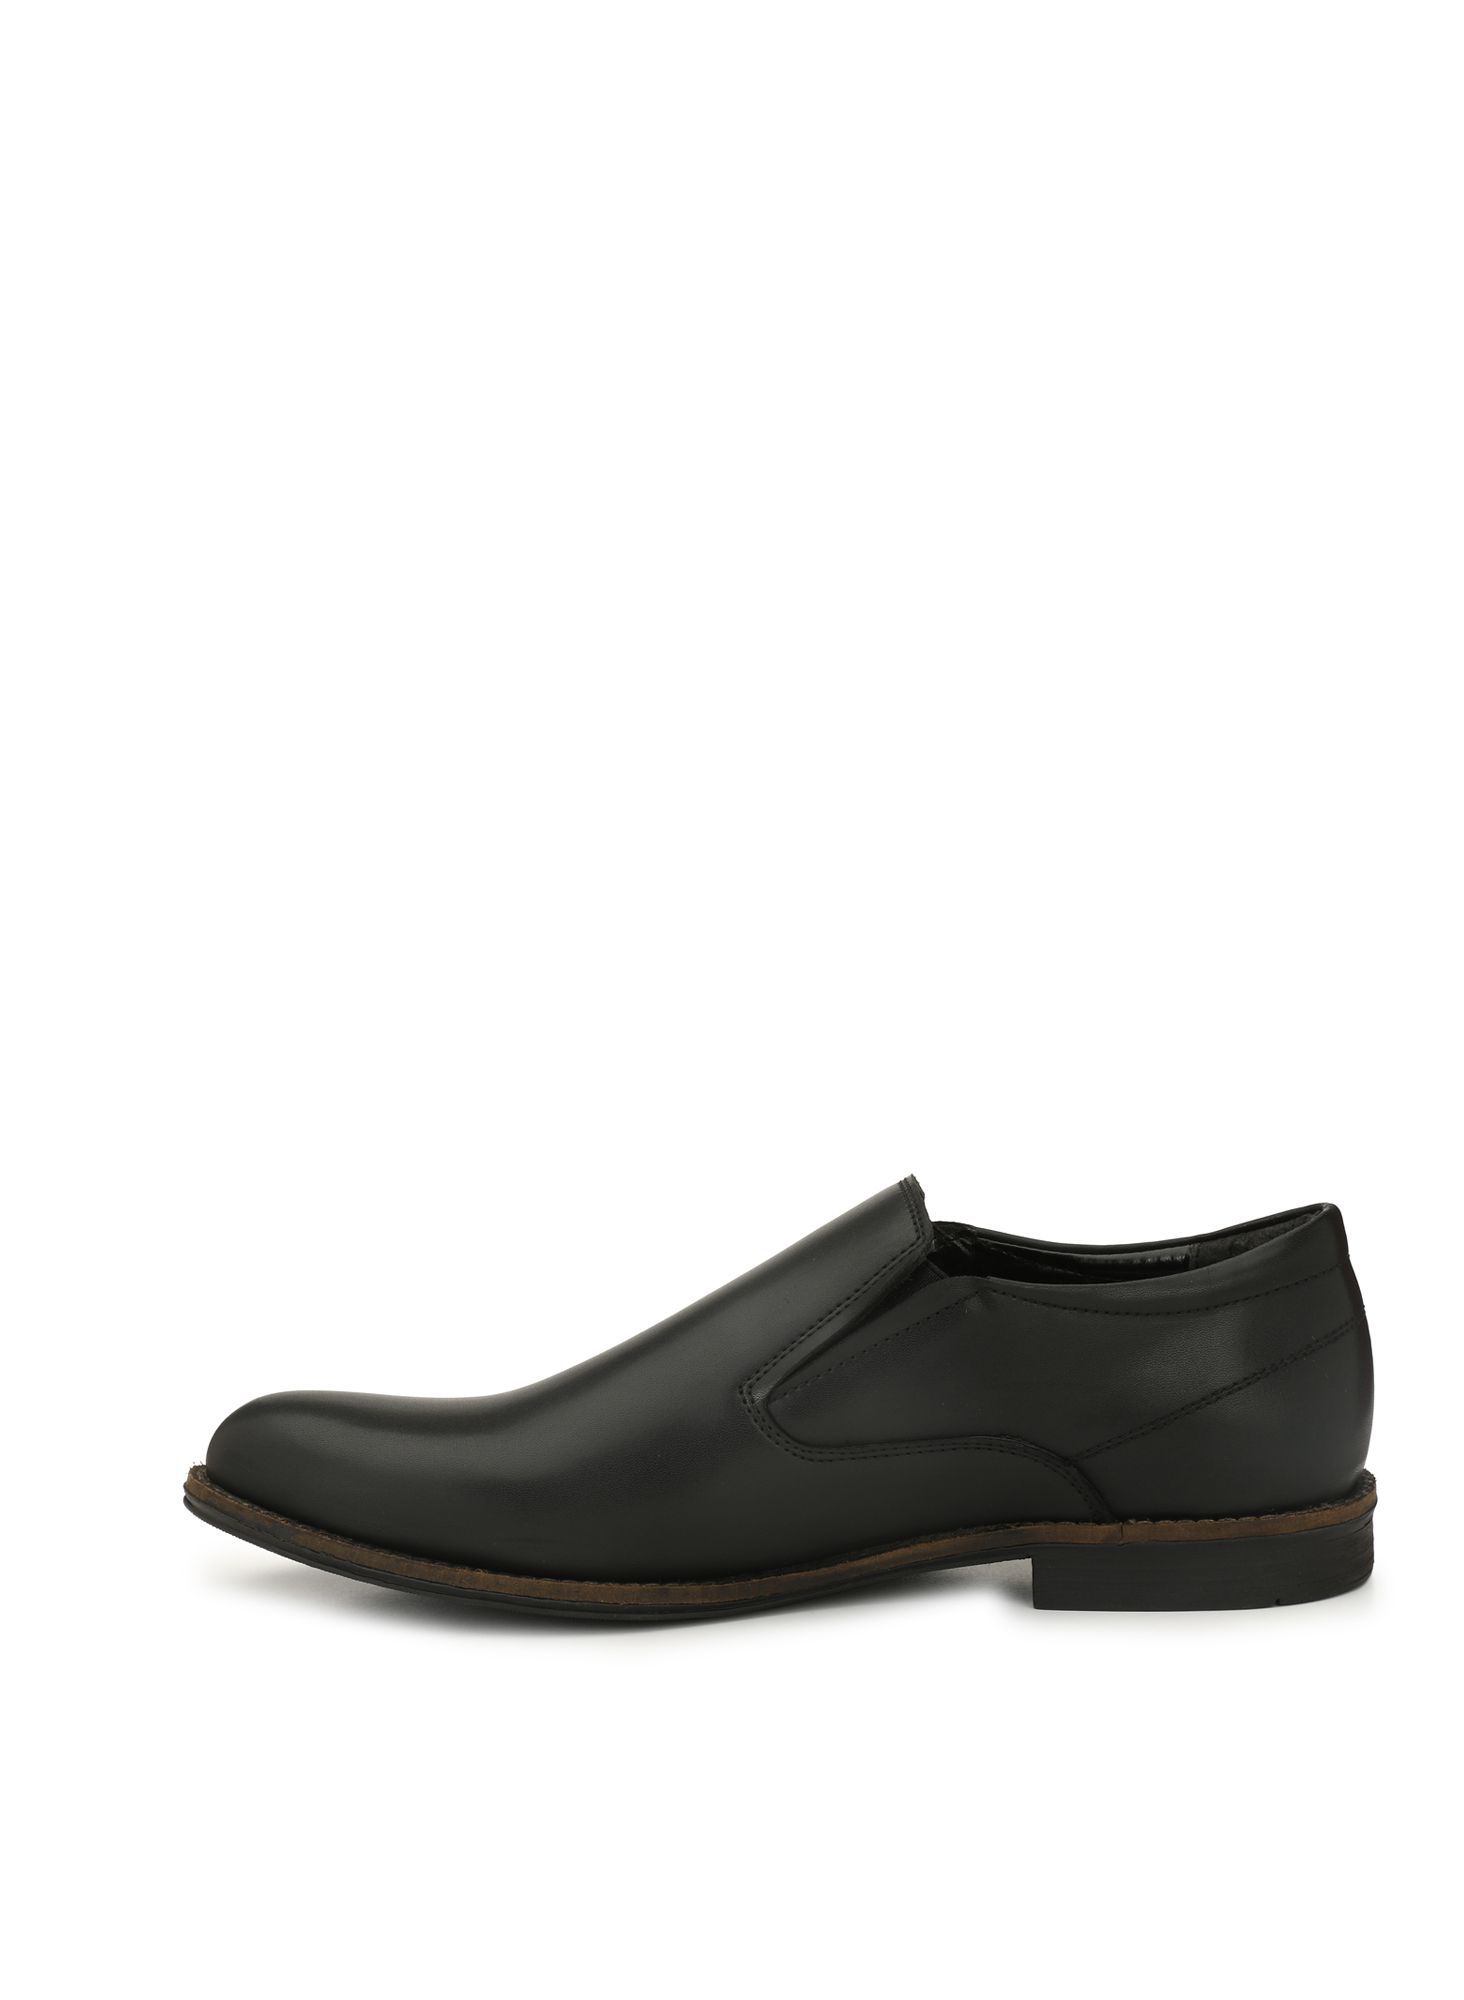 delize black formal shoes